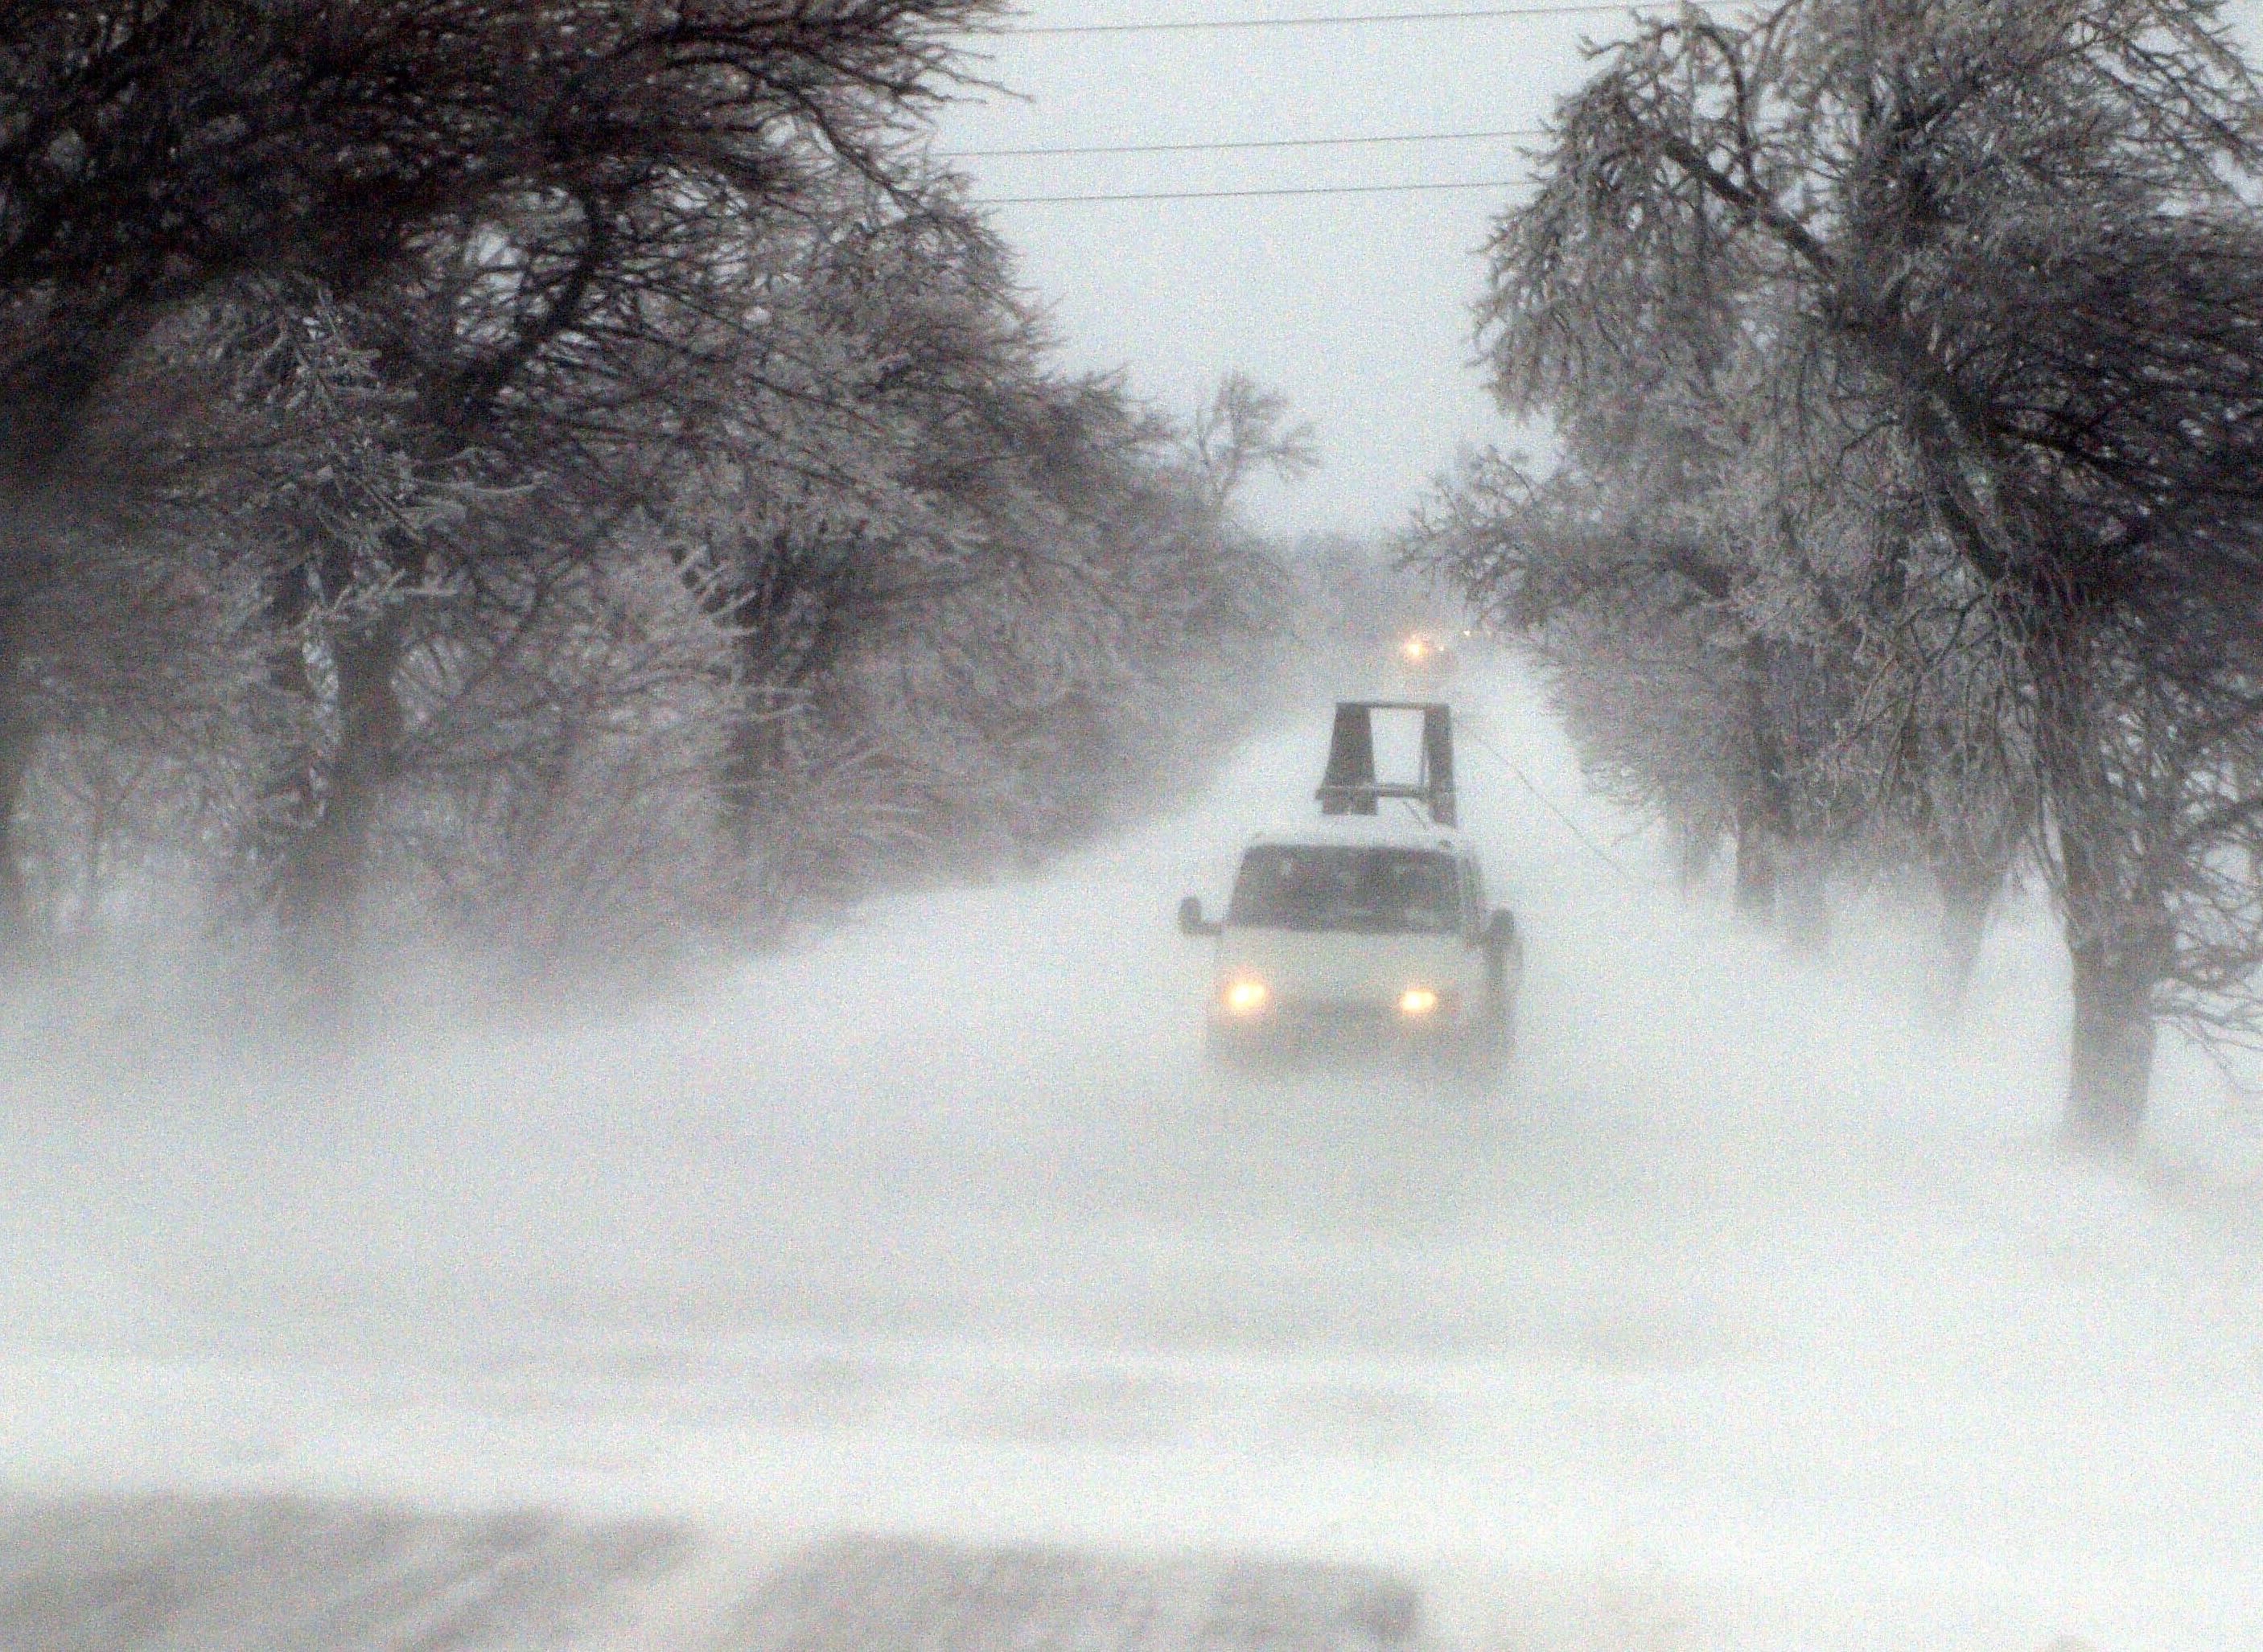 Тежка е обстановката във Варненска област заради обилния снеговалеж, придружен с вятър. Има закъсали автобуси и автомобили. Заради навявания, бяха затворени пътища в областта.